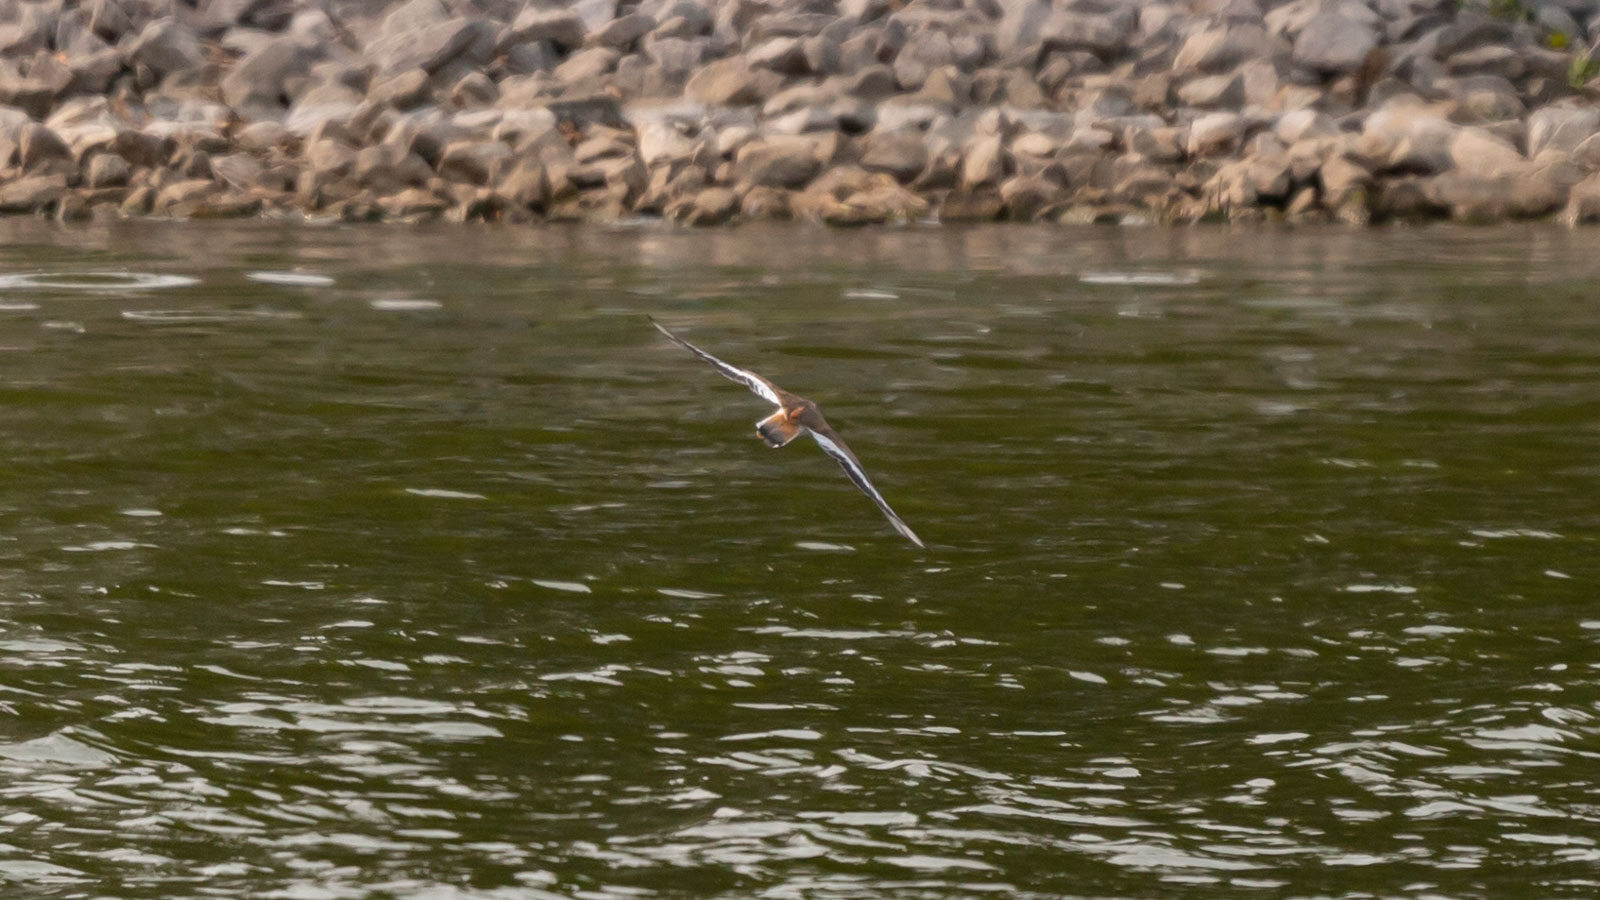 Killdeer flying over water